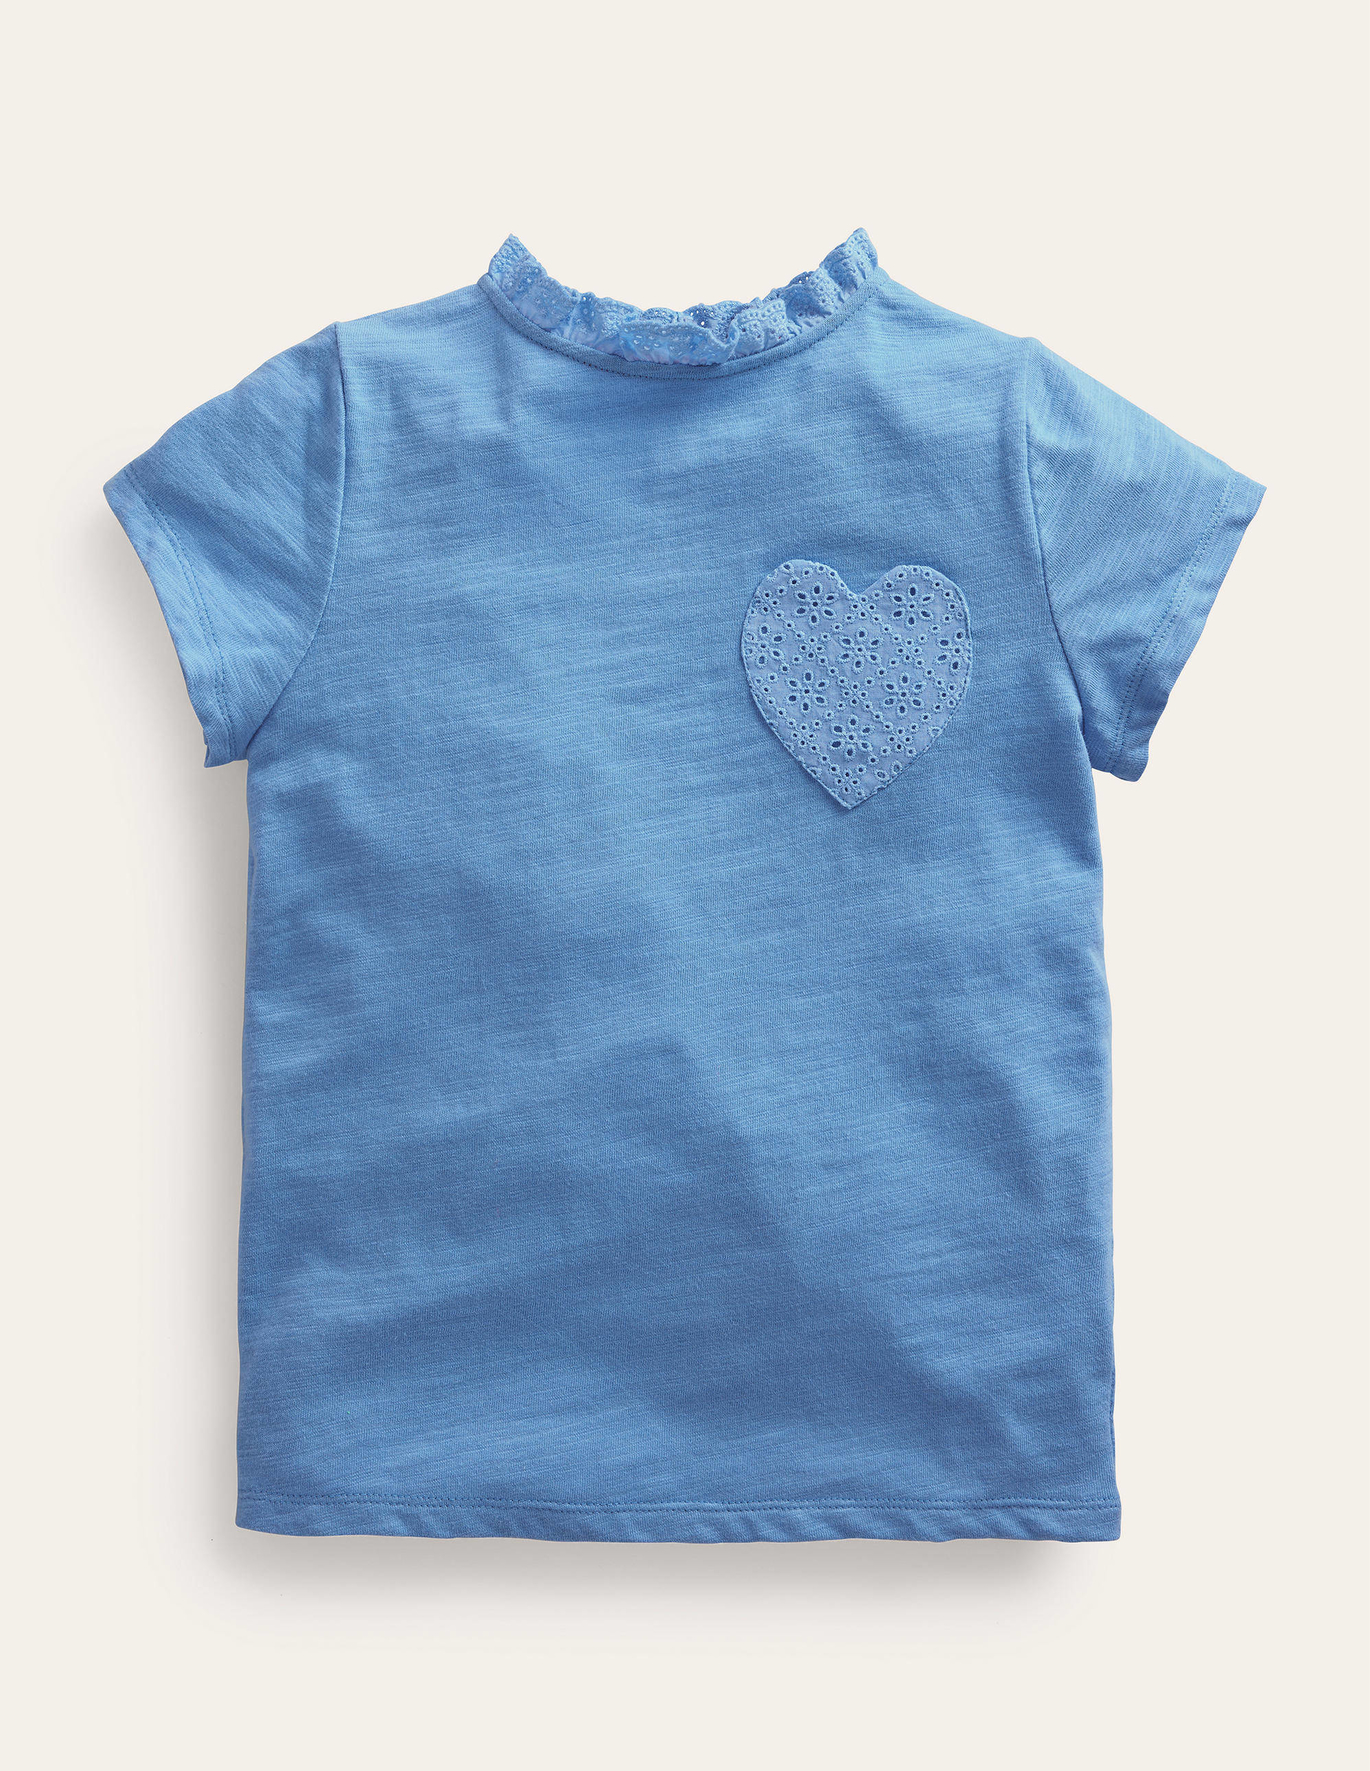 보덴 Boden Broderie Pocket T-shirt - Vista Blue